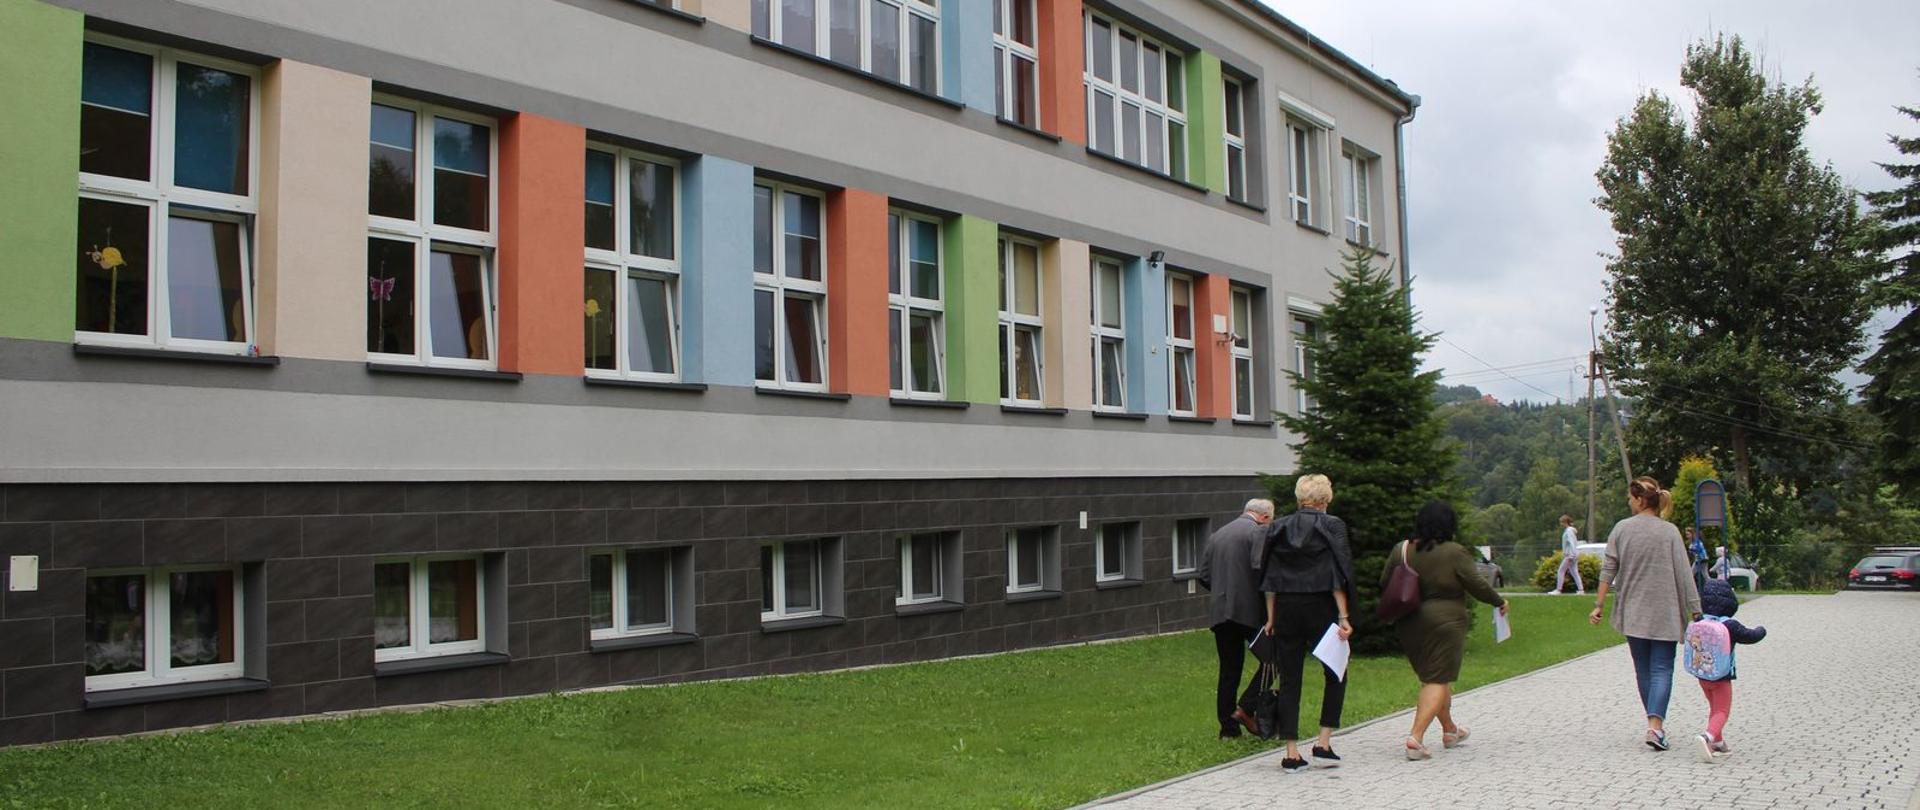 Na zdjęciu budynek szkoły w Zebrzydowicach, widoczna kolorowa elewacja i grupa osób w tle. 